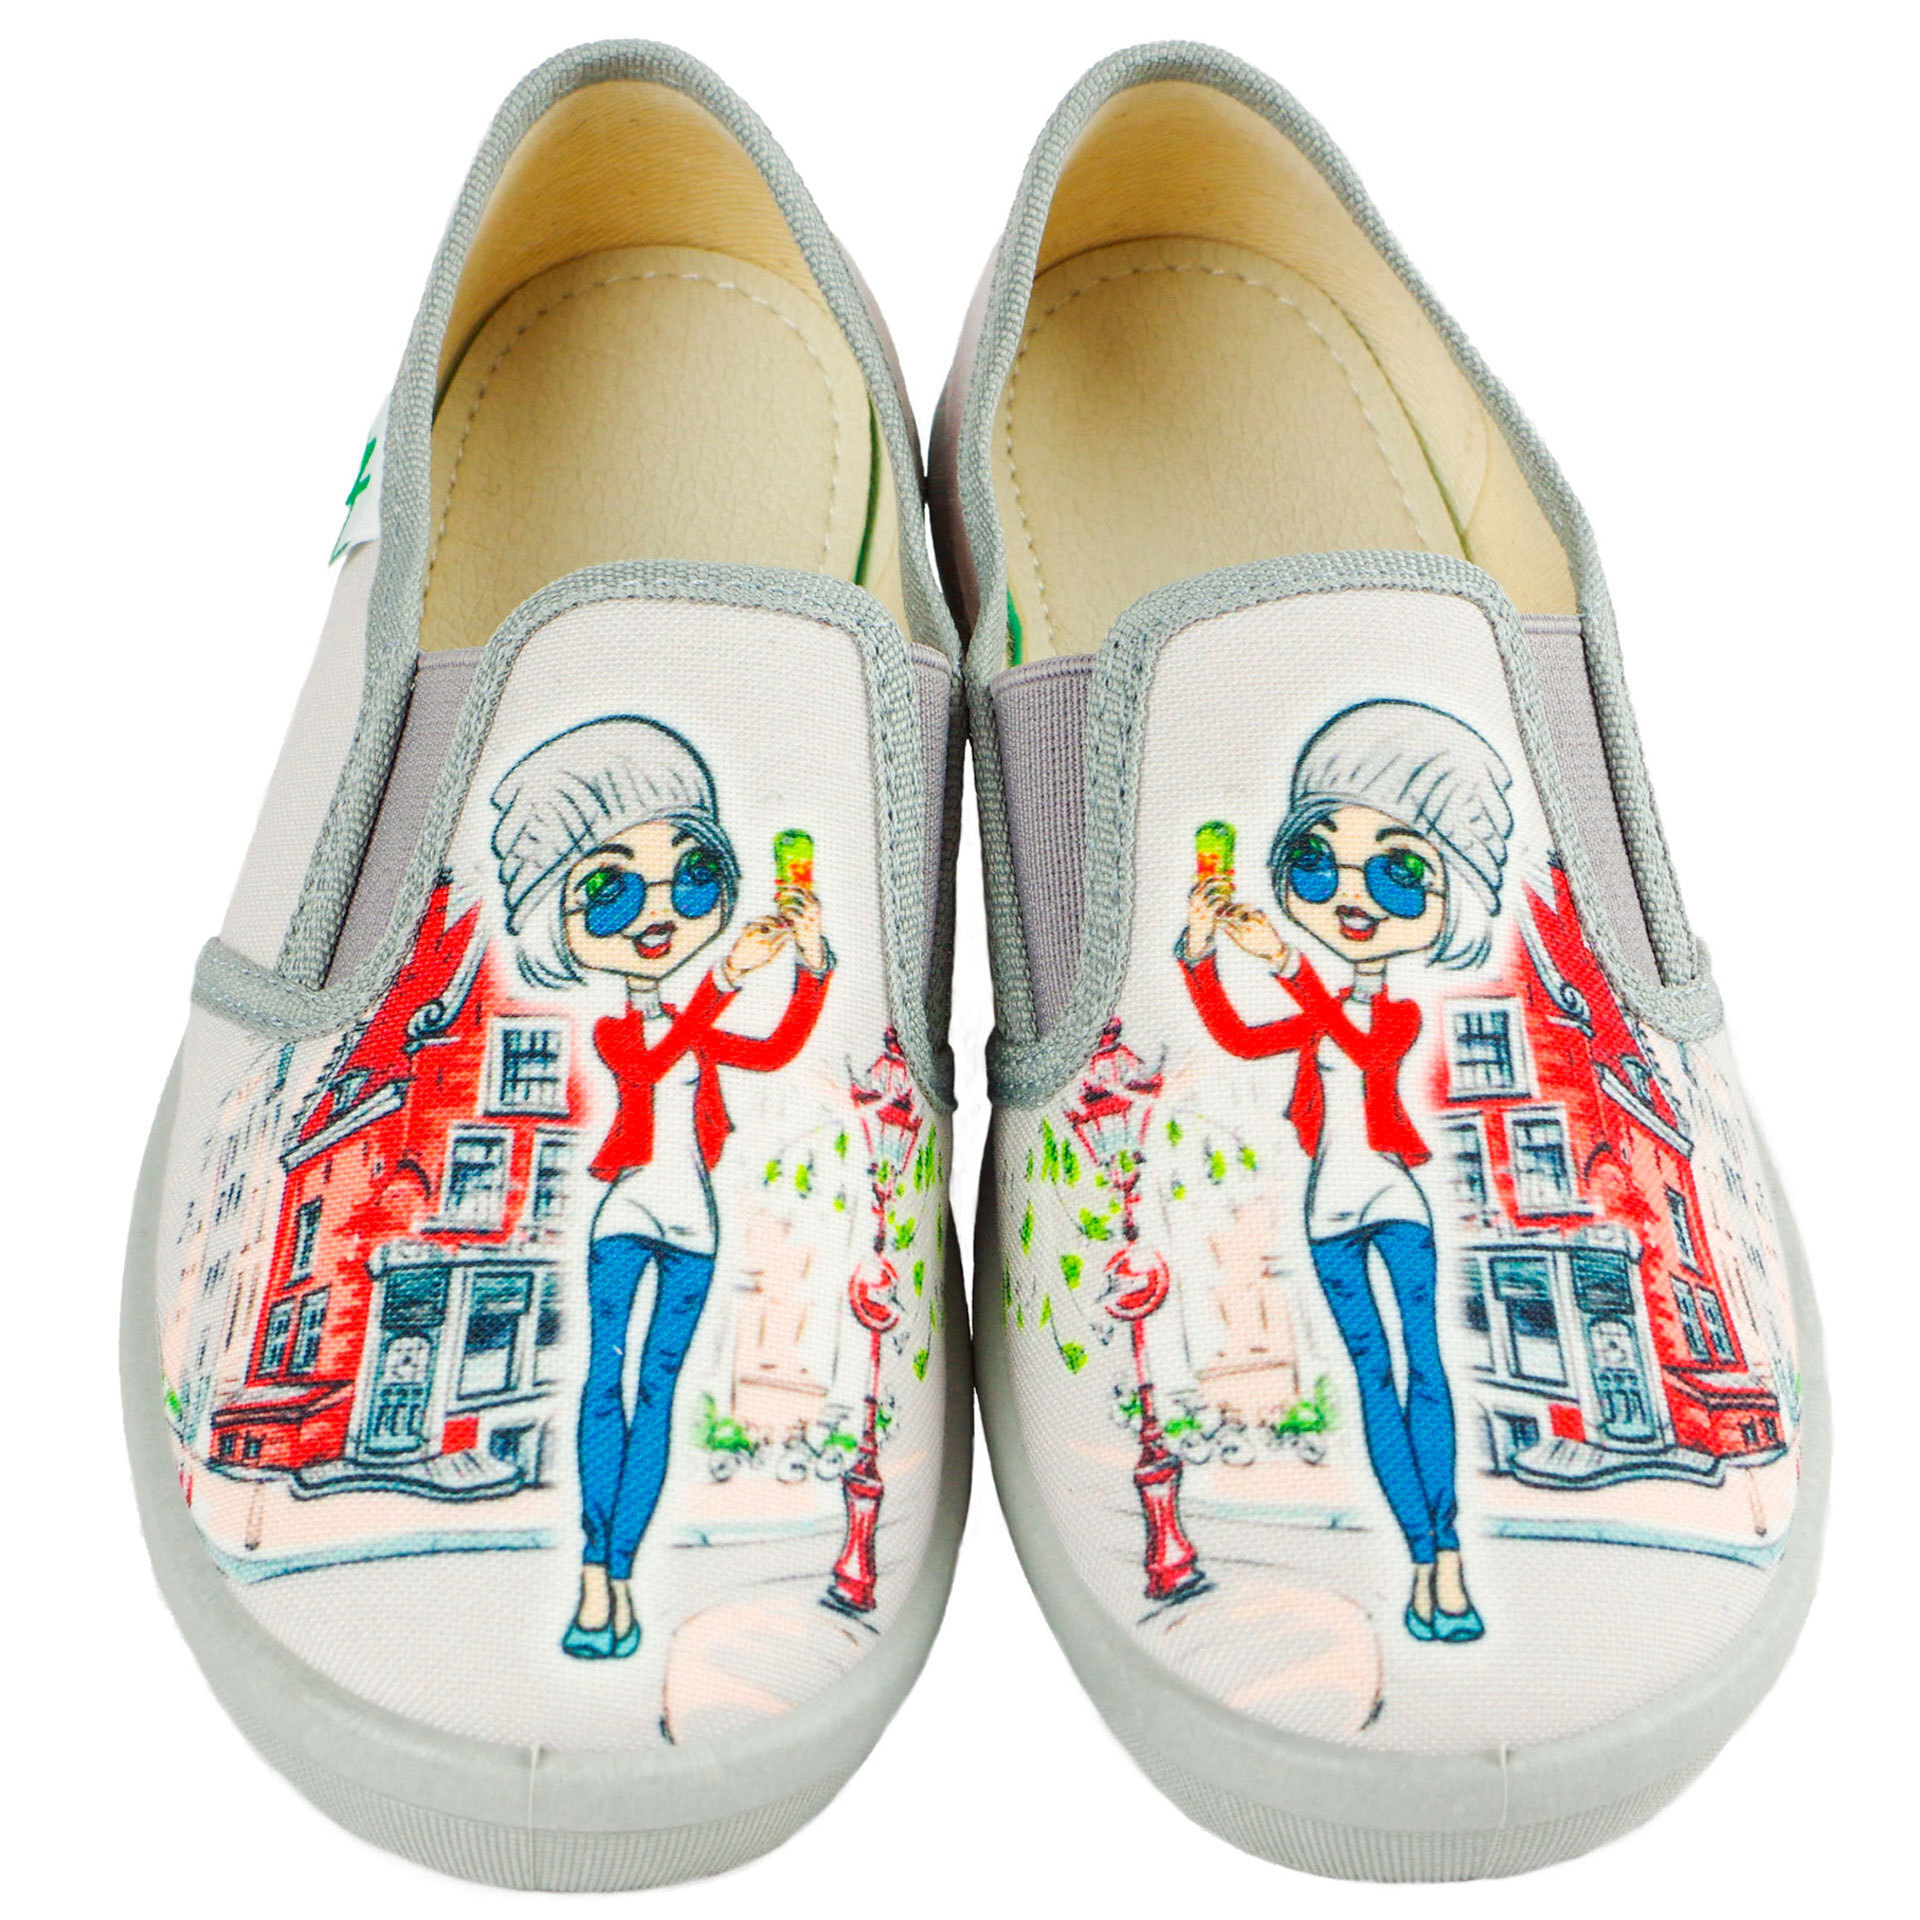 Текстильная обувь для девочек Тапочки Paris (1989) цвет Серый 26-32 размеры – Sole Kids. Фото 2